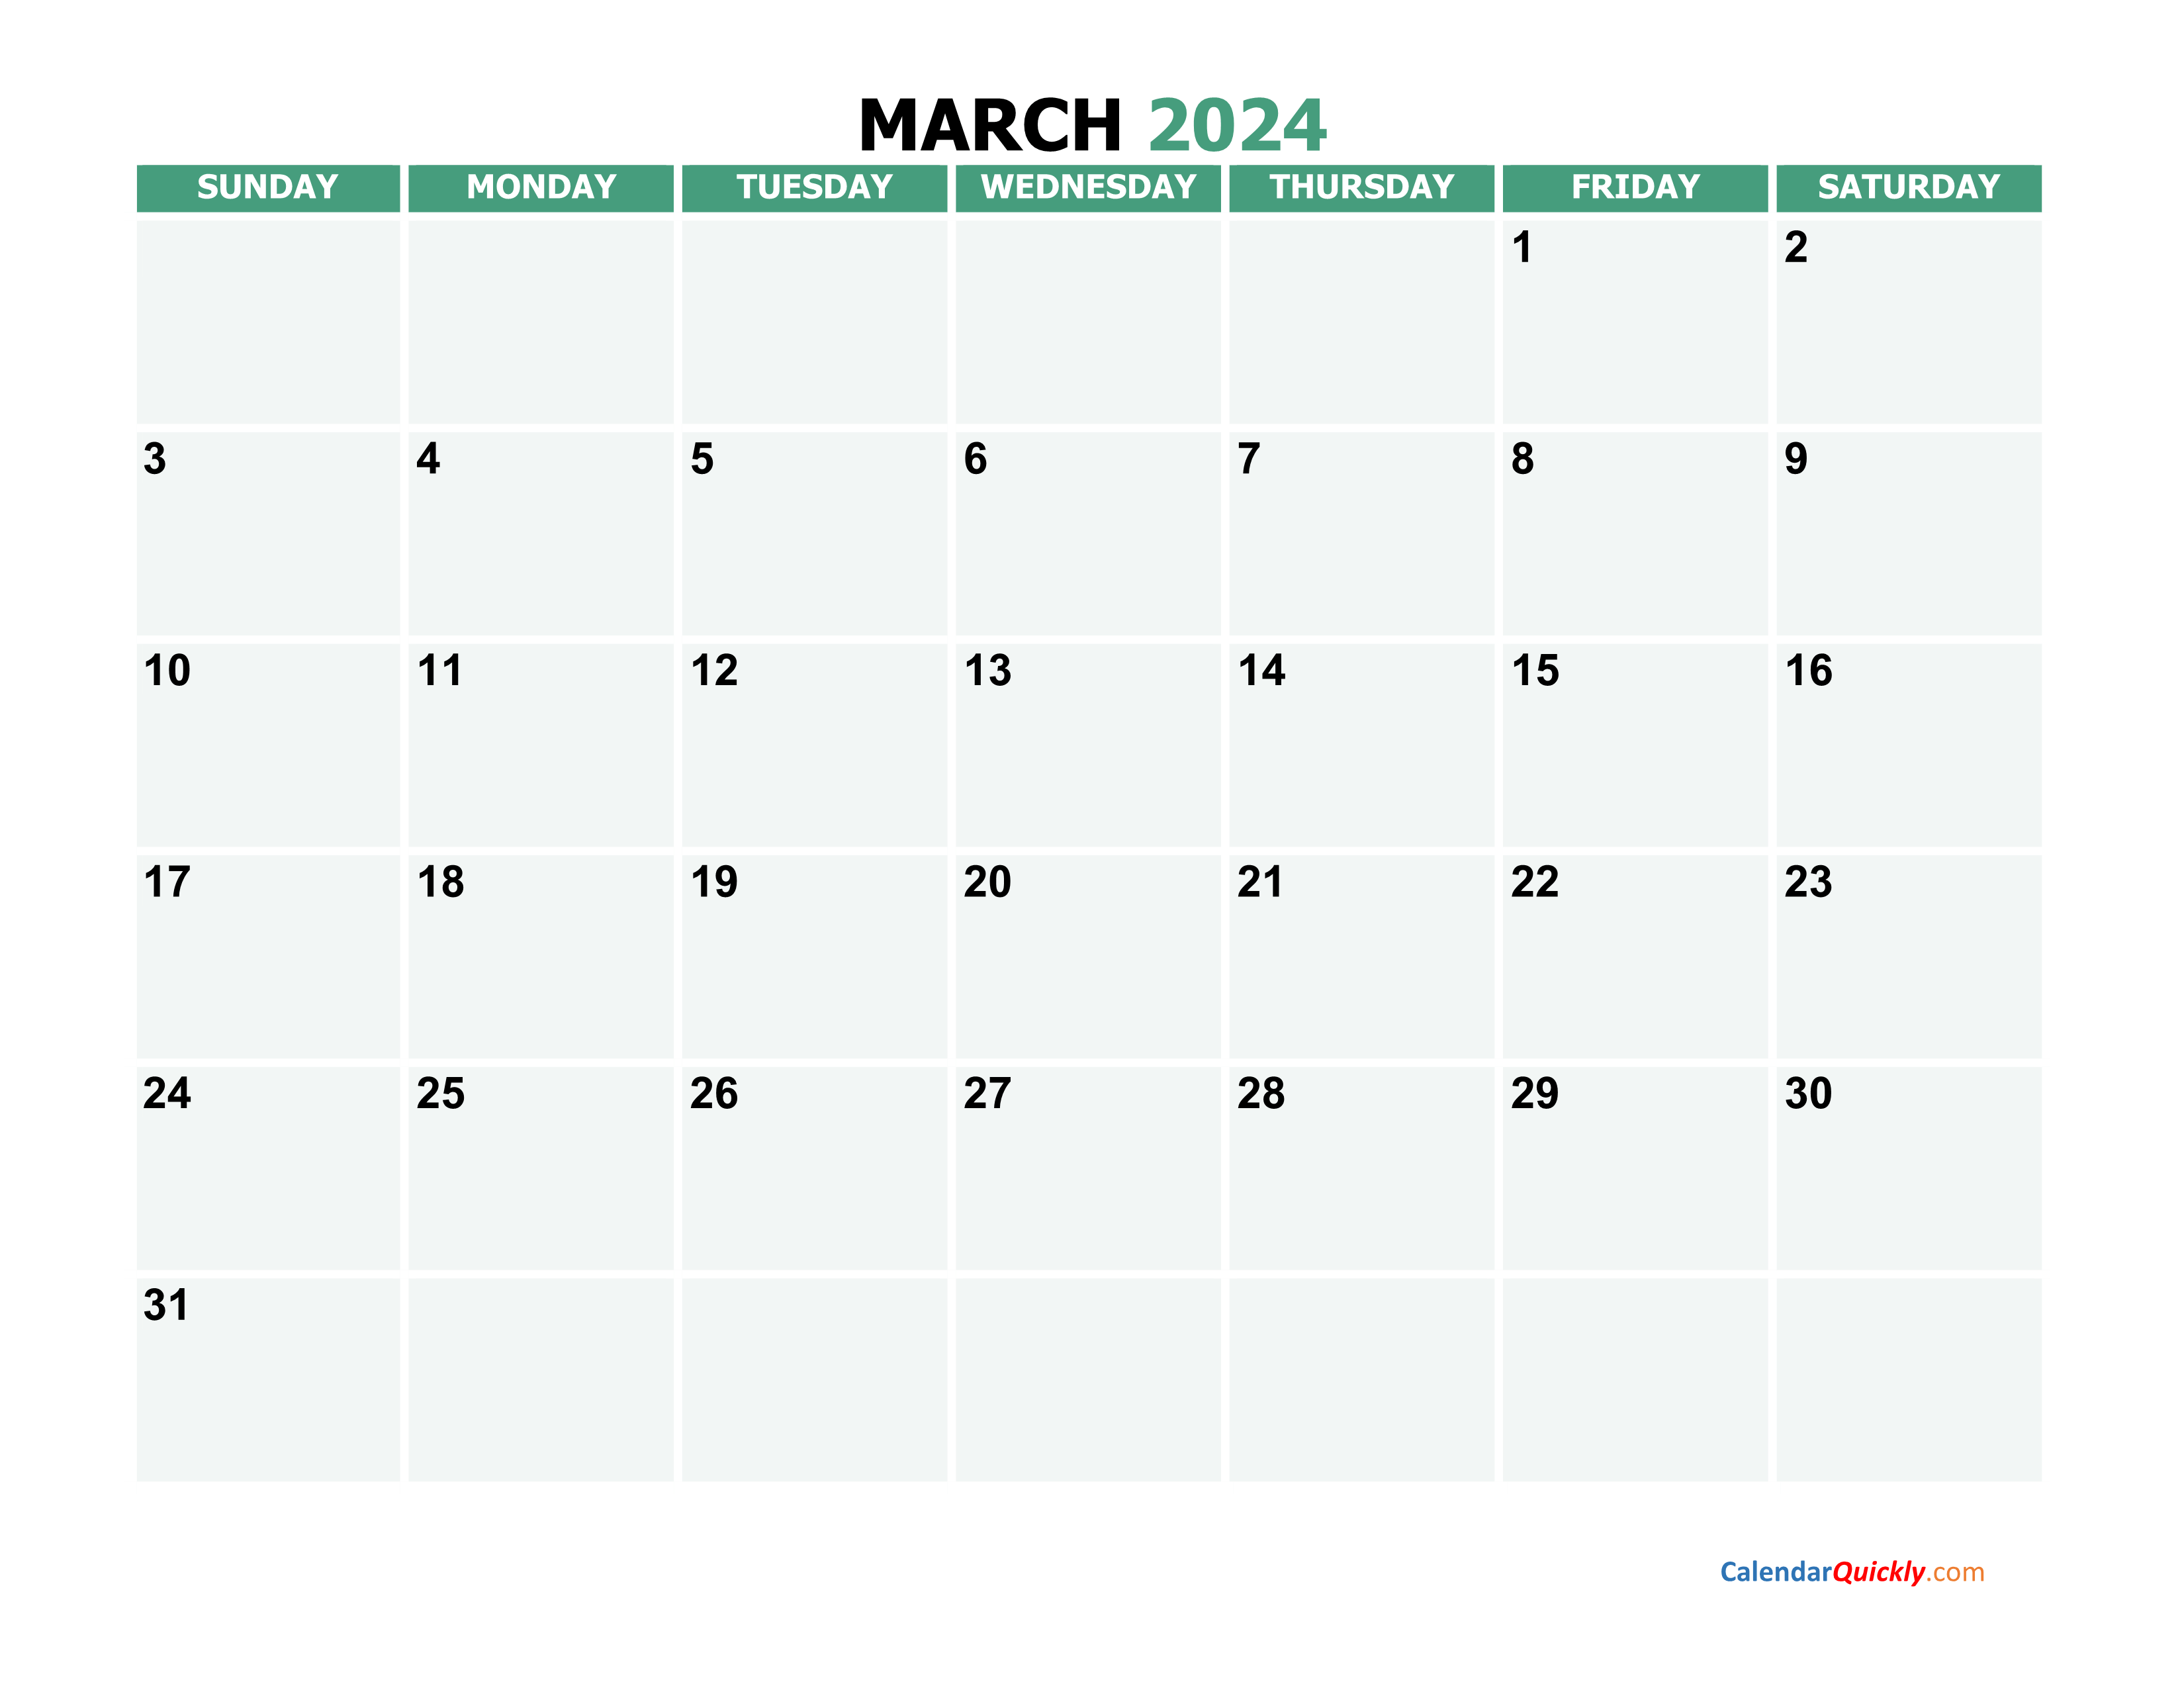 march-2024-printable-calendar-calendar-quickly